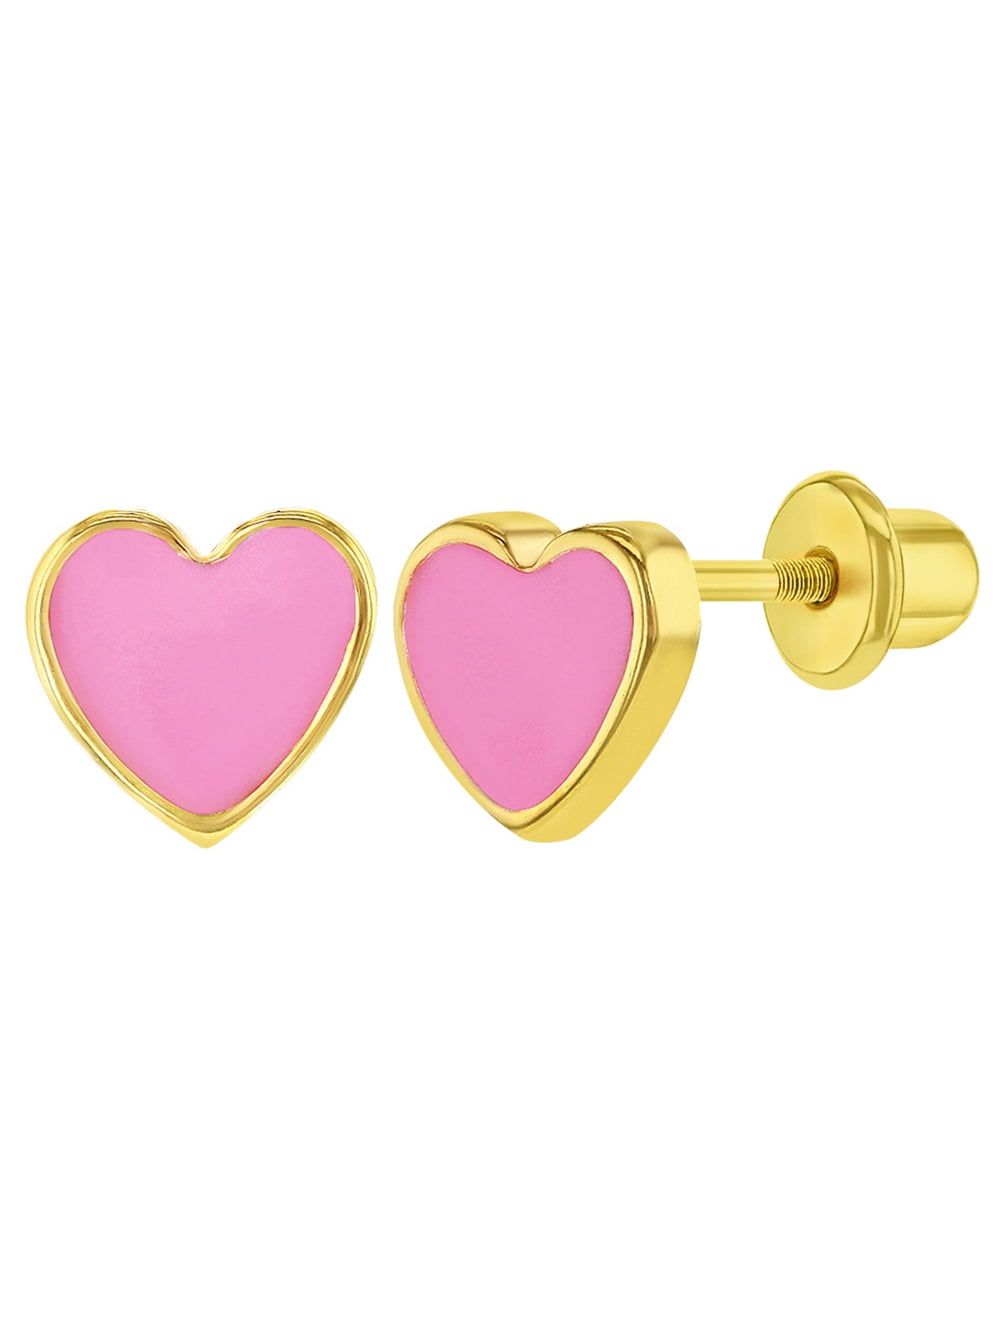 18KT Yellow Gold Pink & White enamel Heart screwback earrings 6mm 